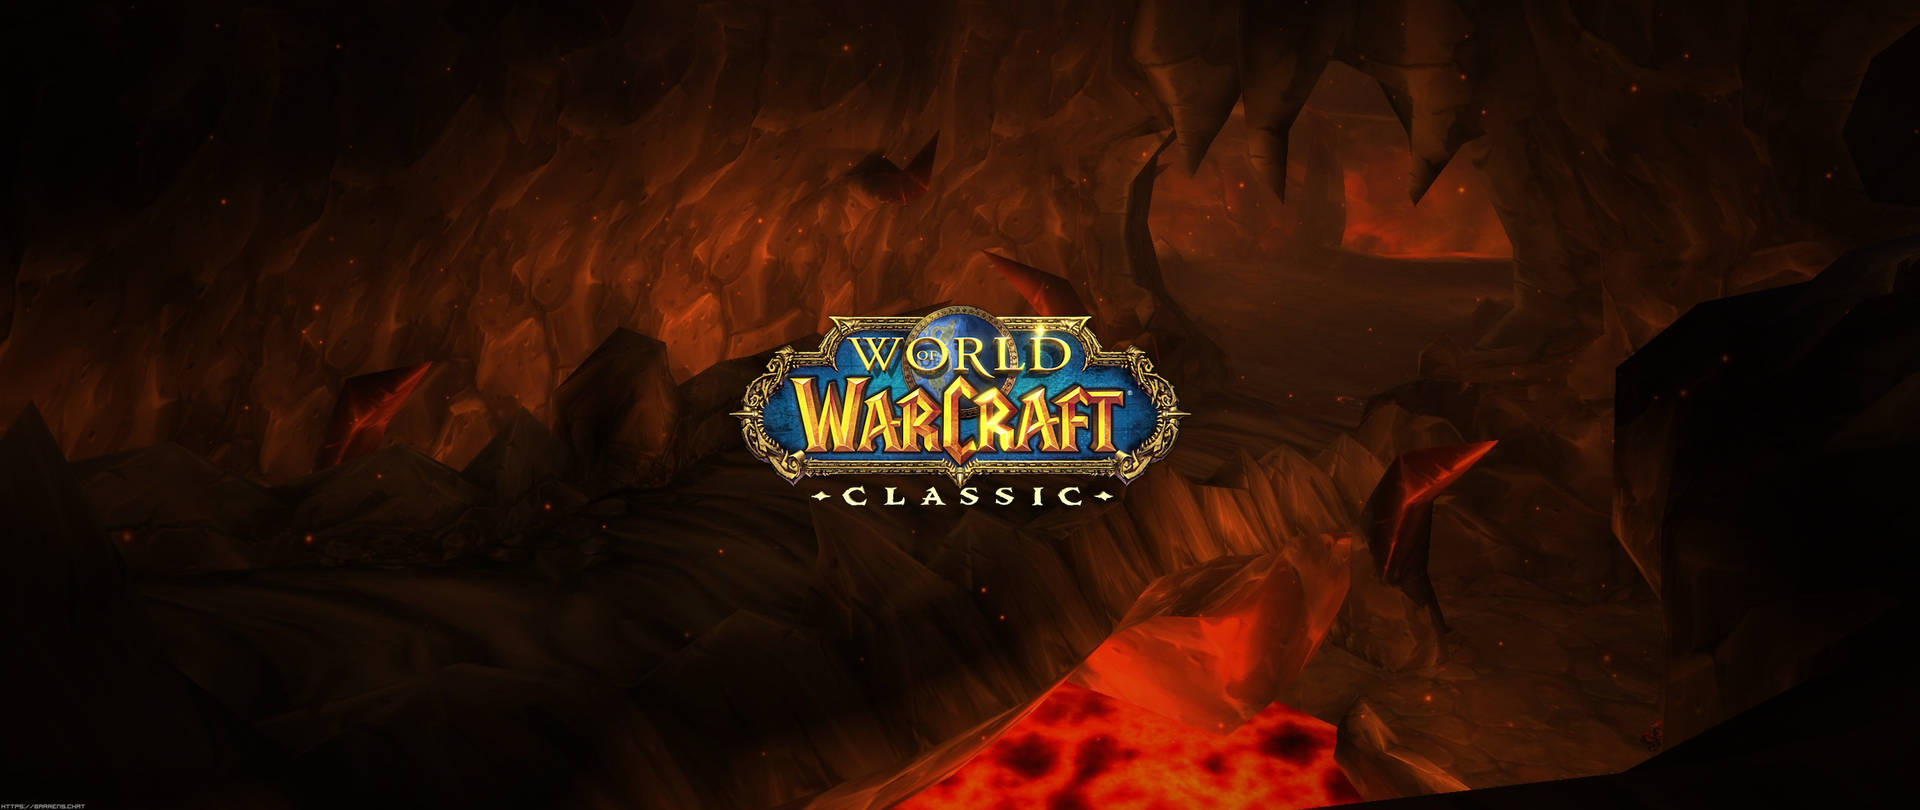 Ultrawide Warcraft